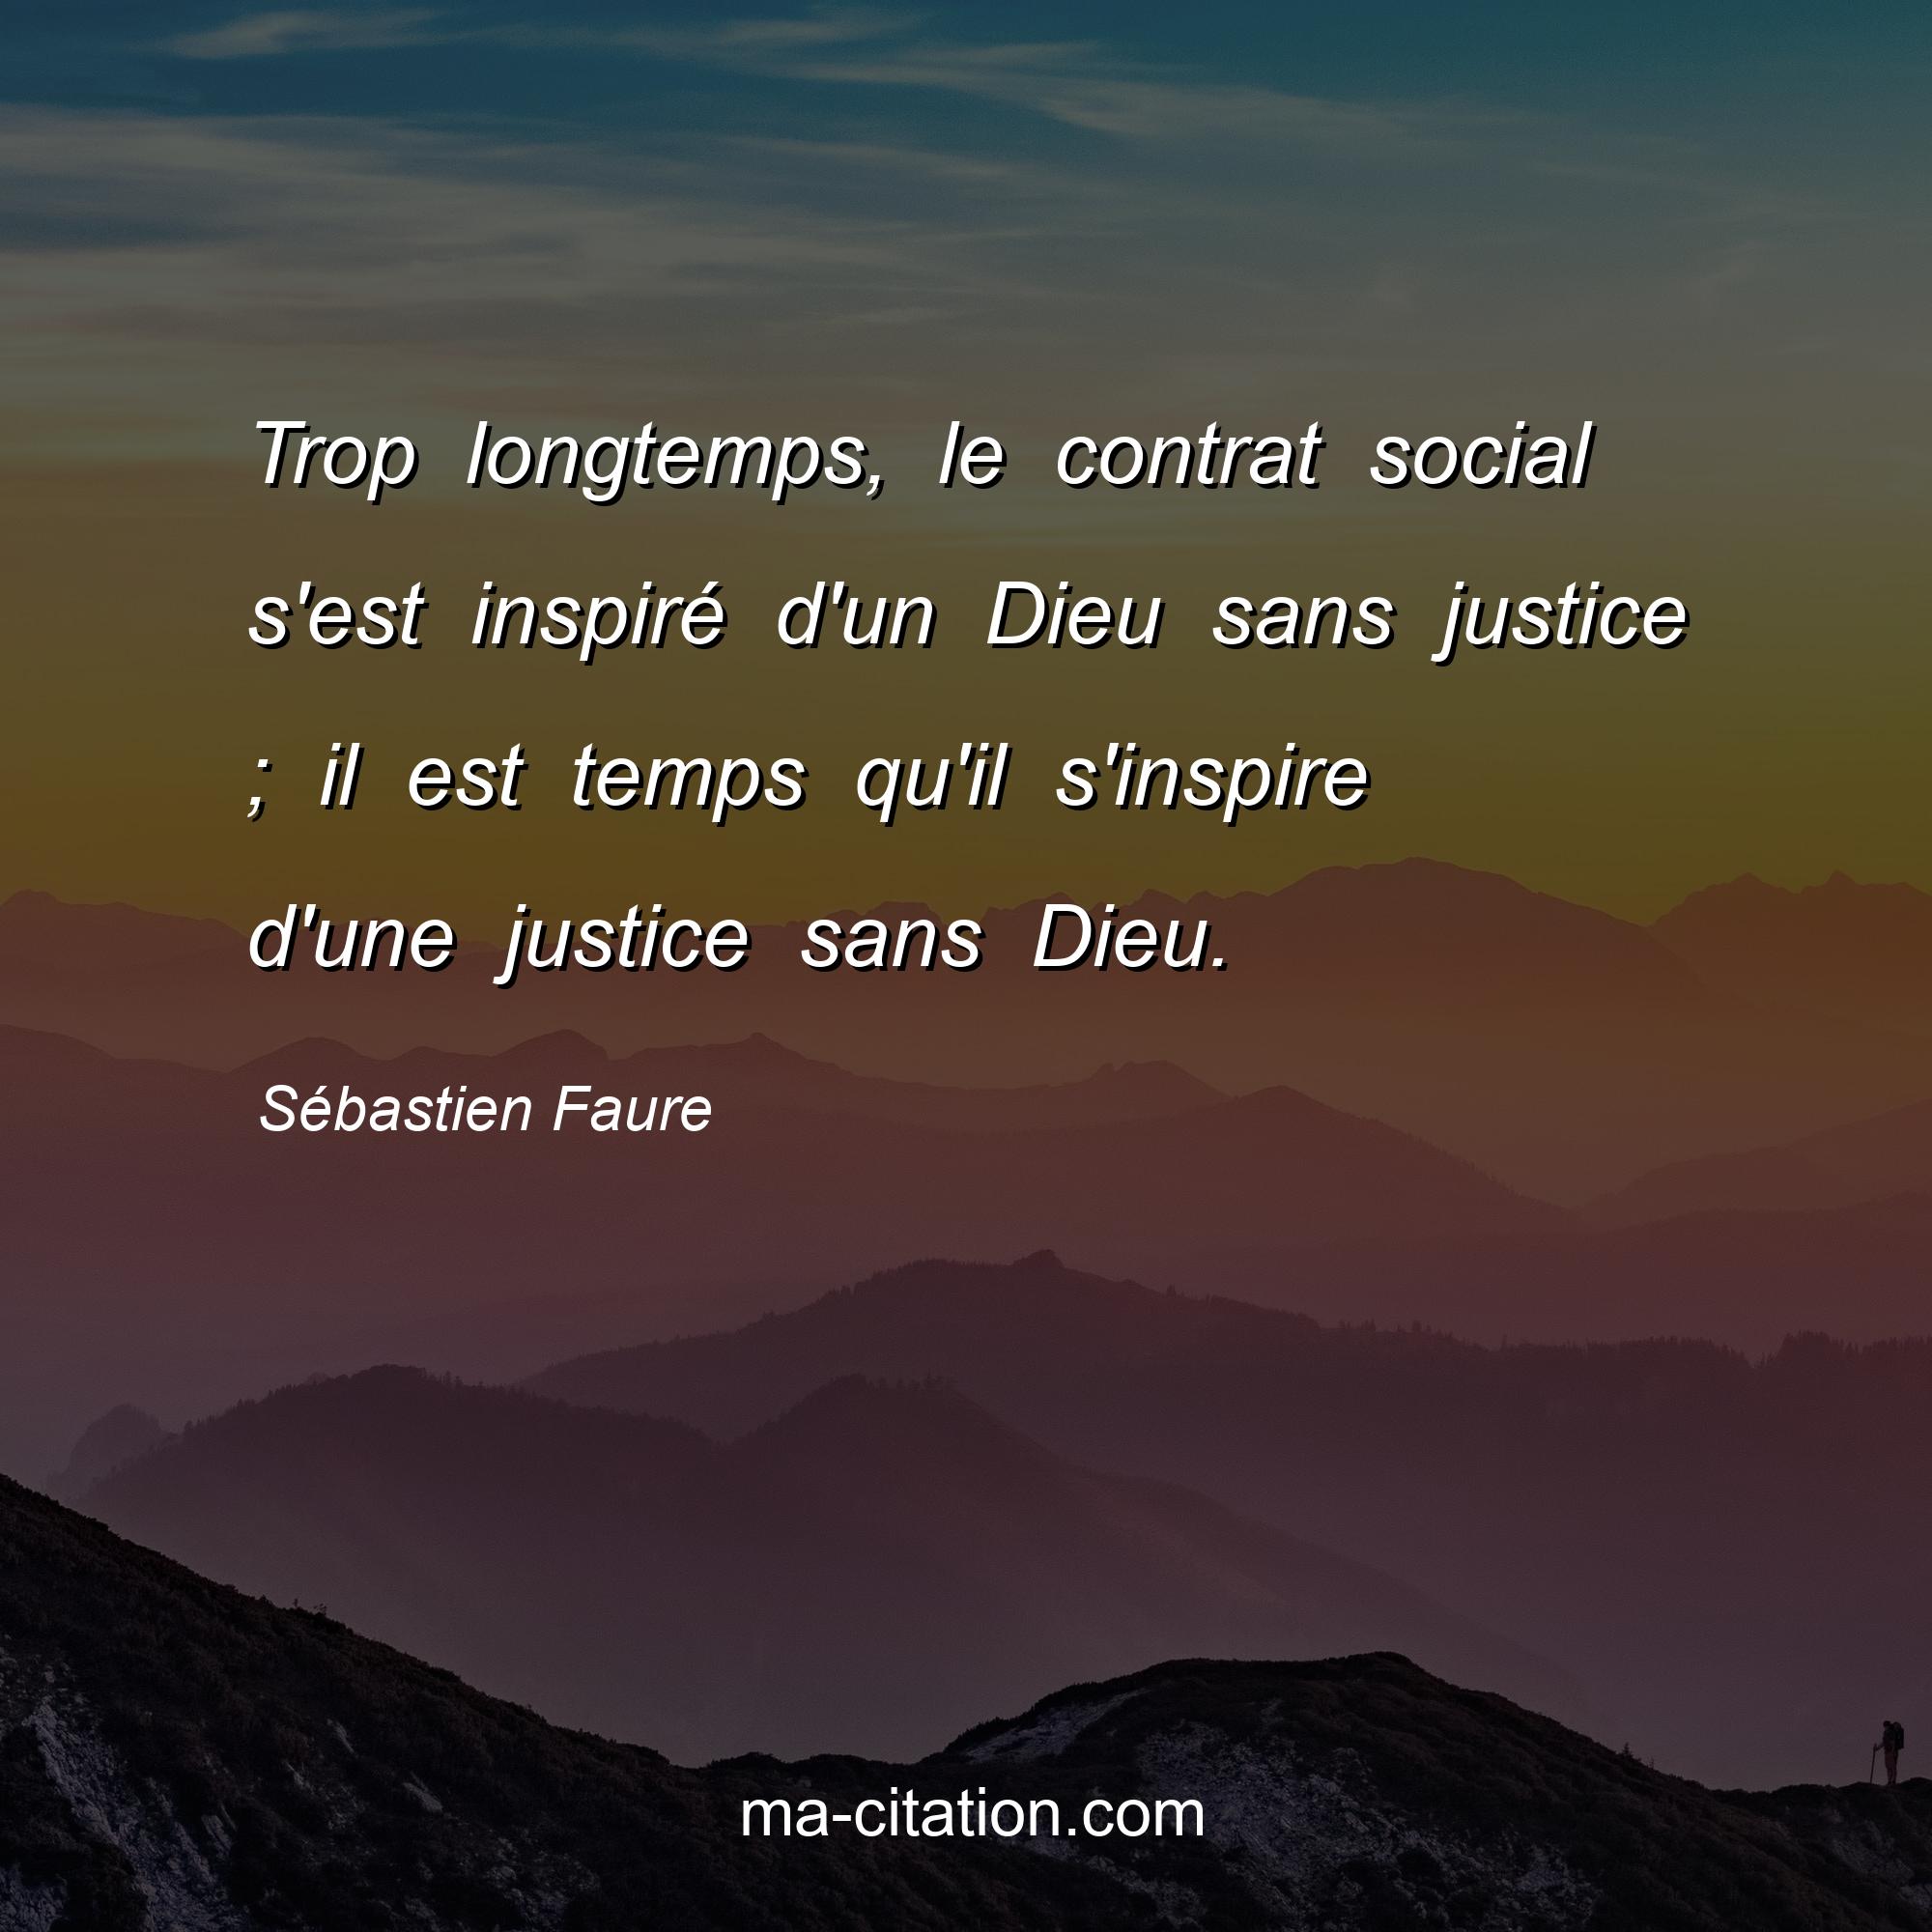 Sébastien Faure : Trop longtemps, le contrat social s'est inspiré d'un Dieu sans justice ; il est temps qu'il s'inspire d'une justice sans Dieu.